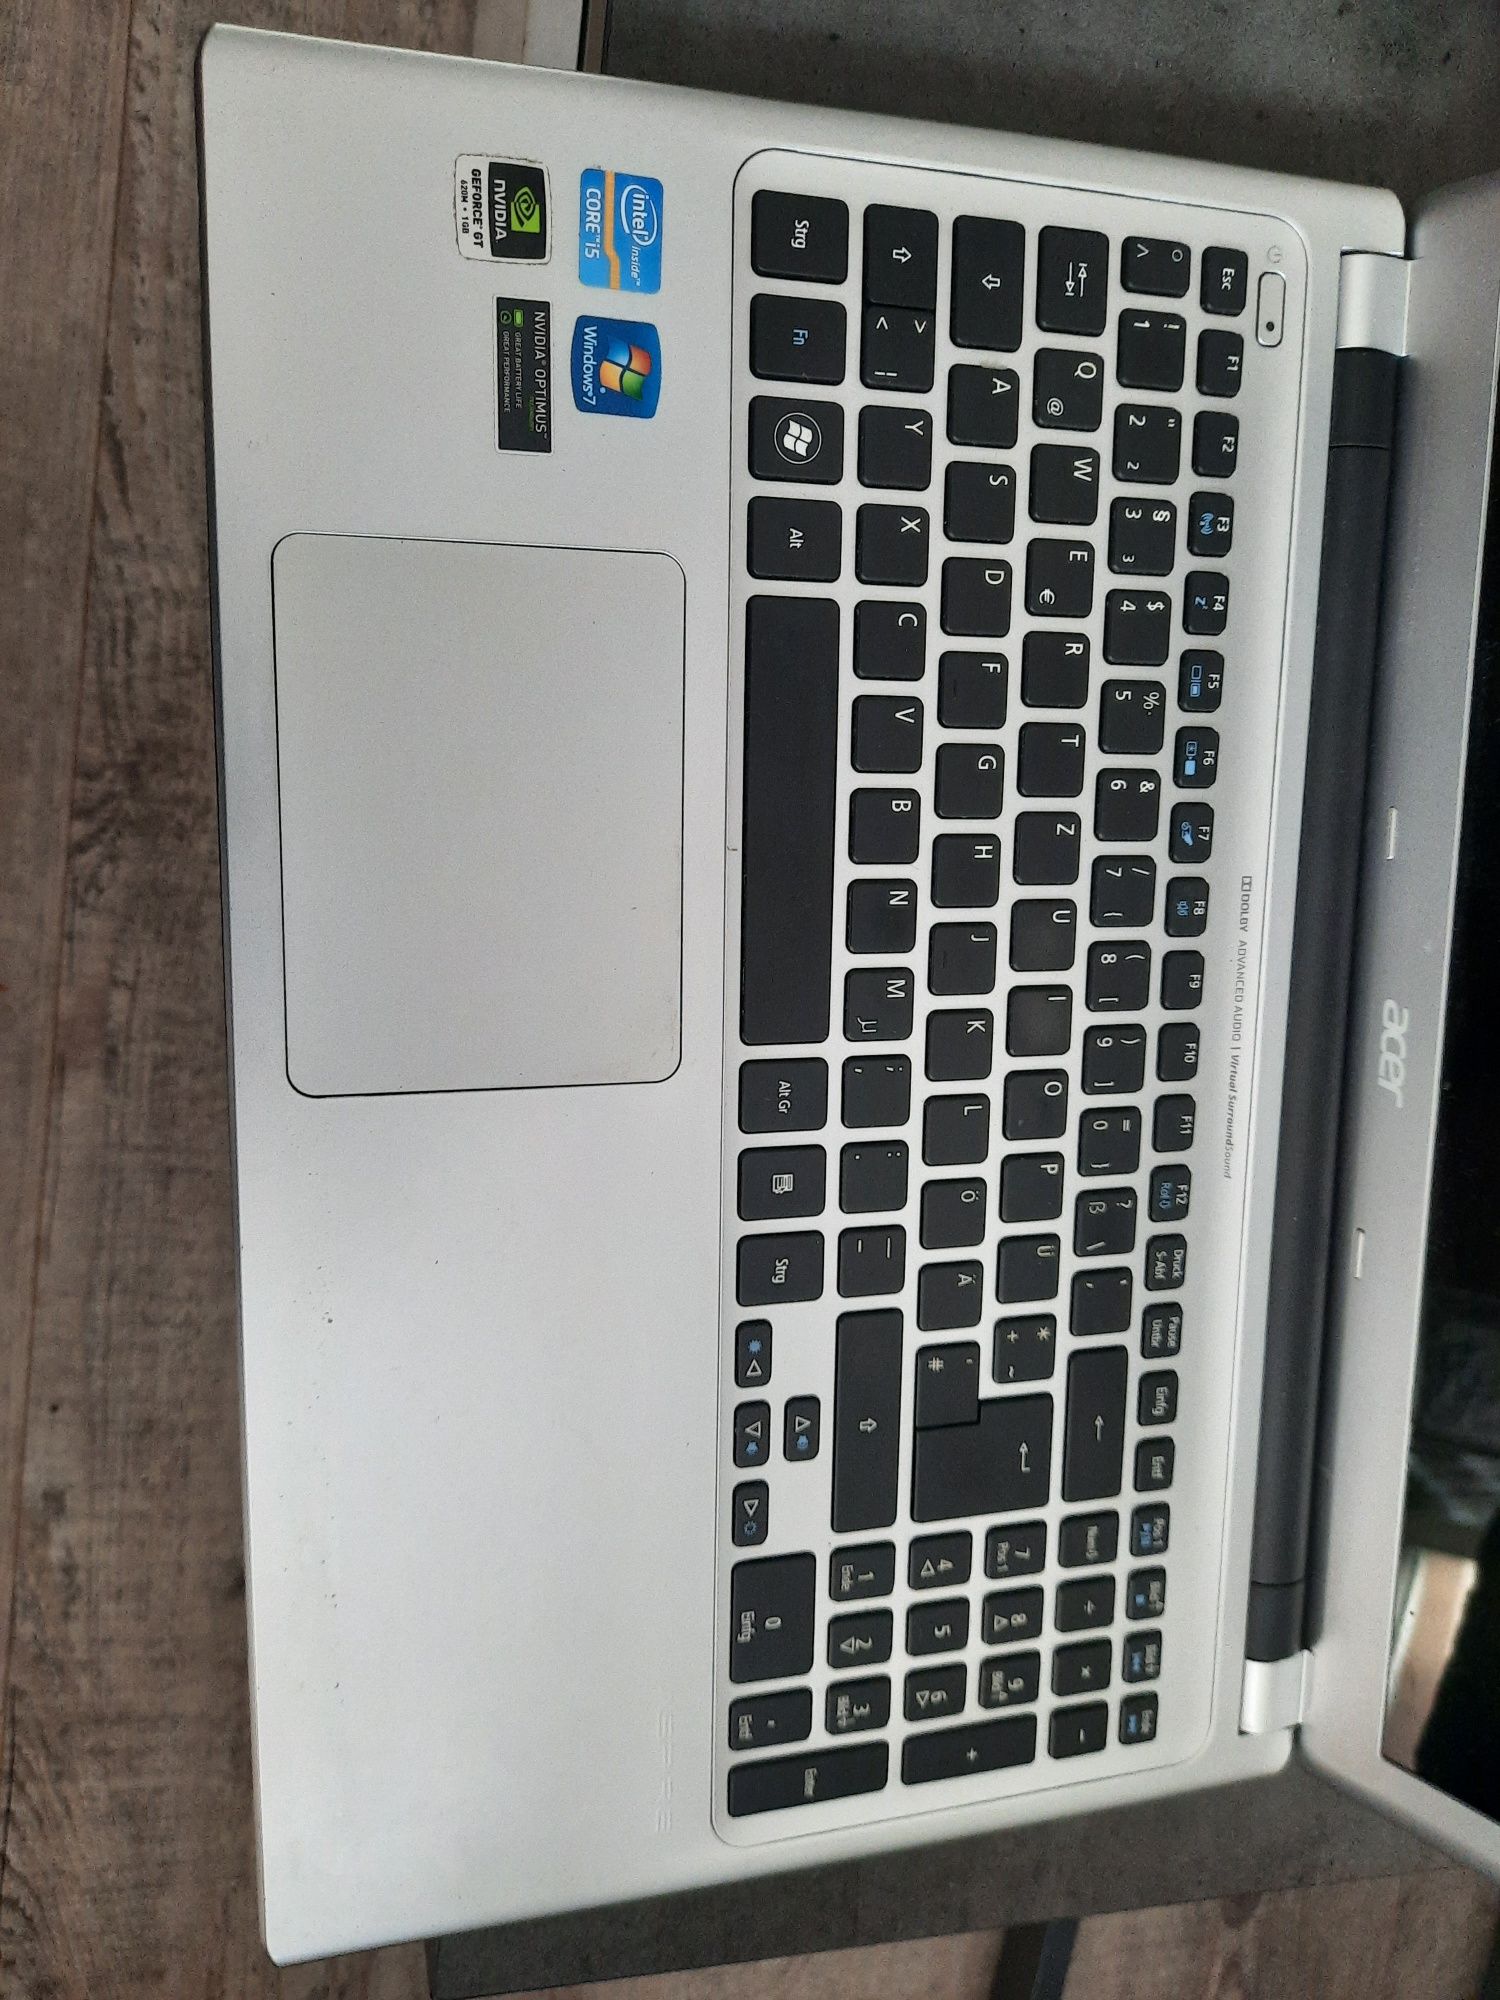 Laptop Acer v5 571